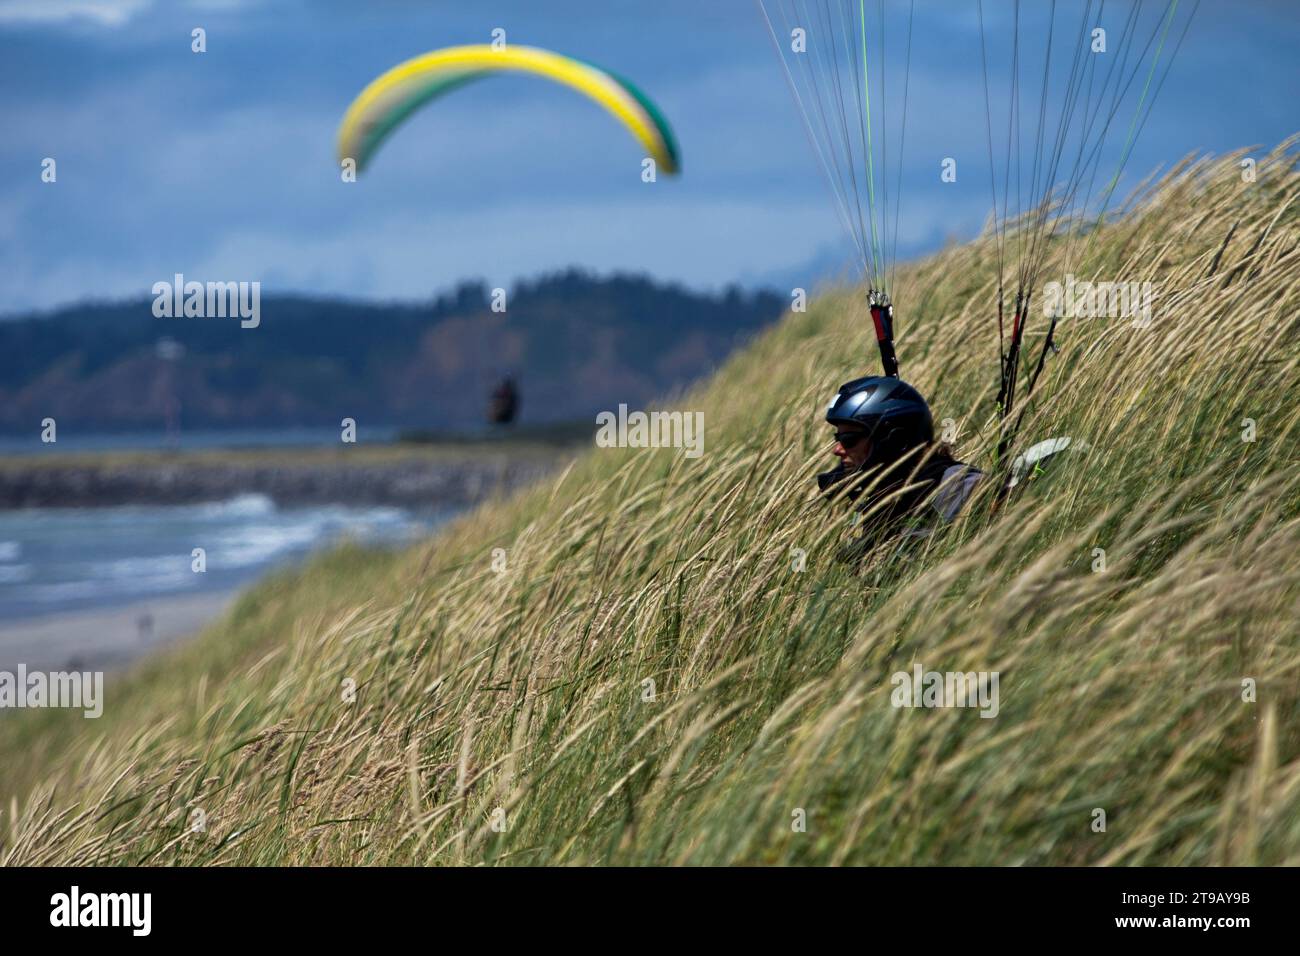 Parapente féminine assise dans de hautes herbes sur une dune au-dessus d'une plage tandis qu'un autre parapente vole en arrière-plan. Banque D'Images